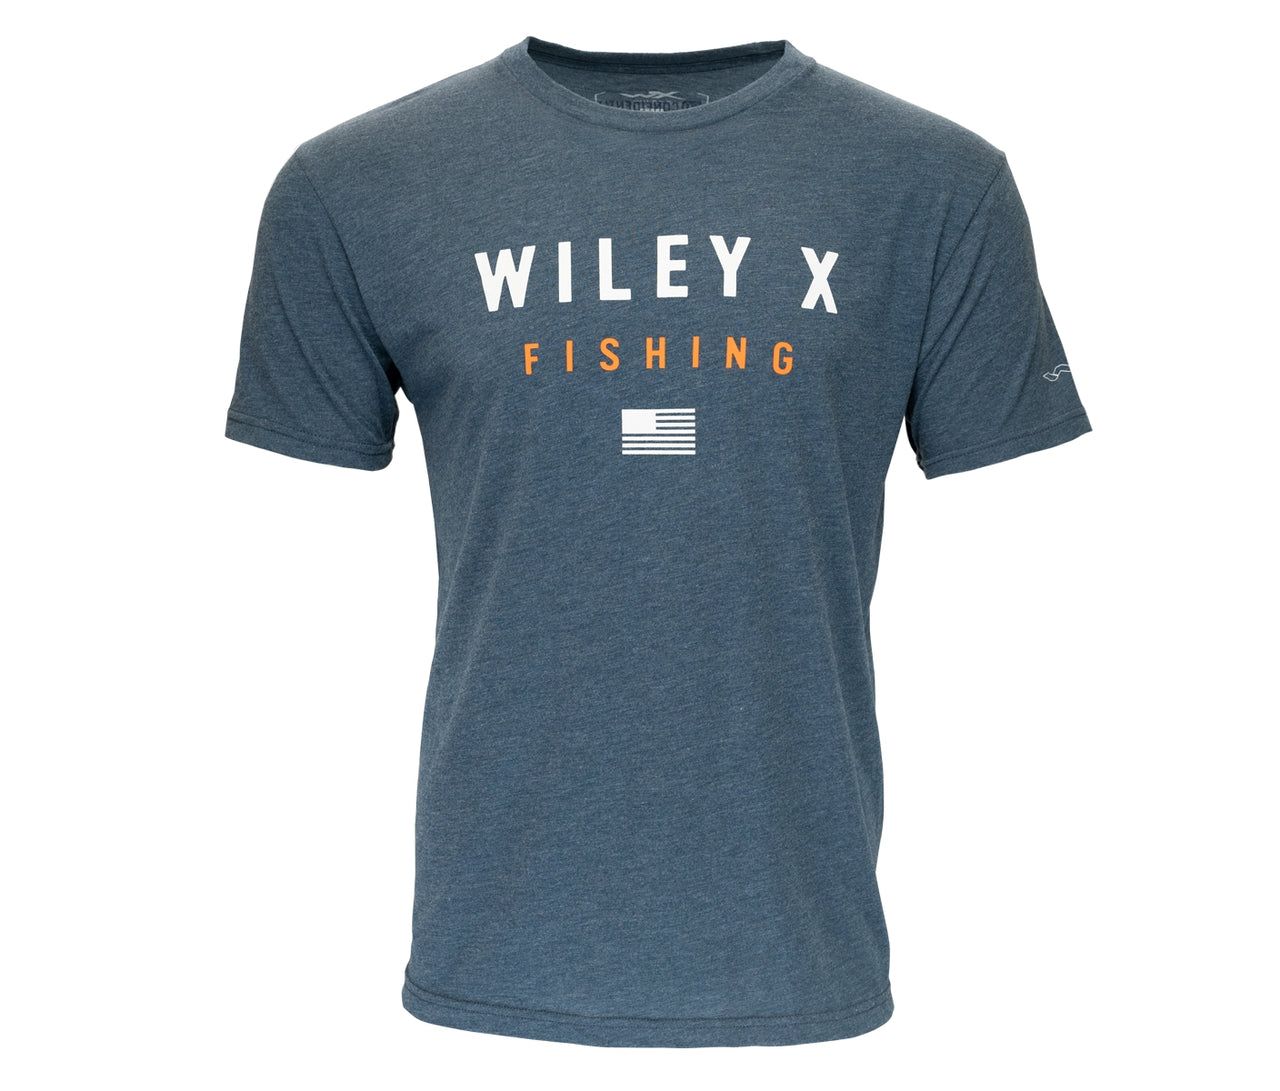 Wiley X T Shirt Shore Shirt